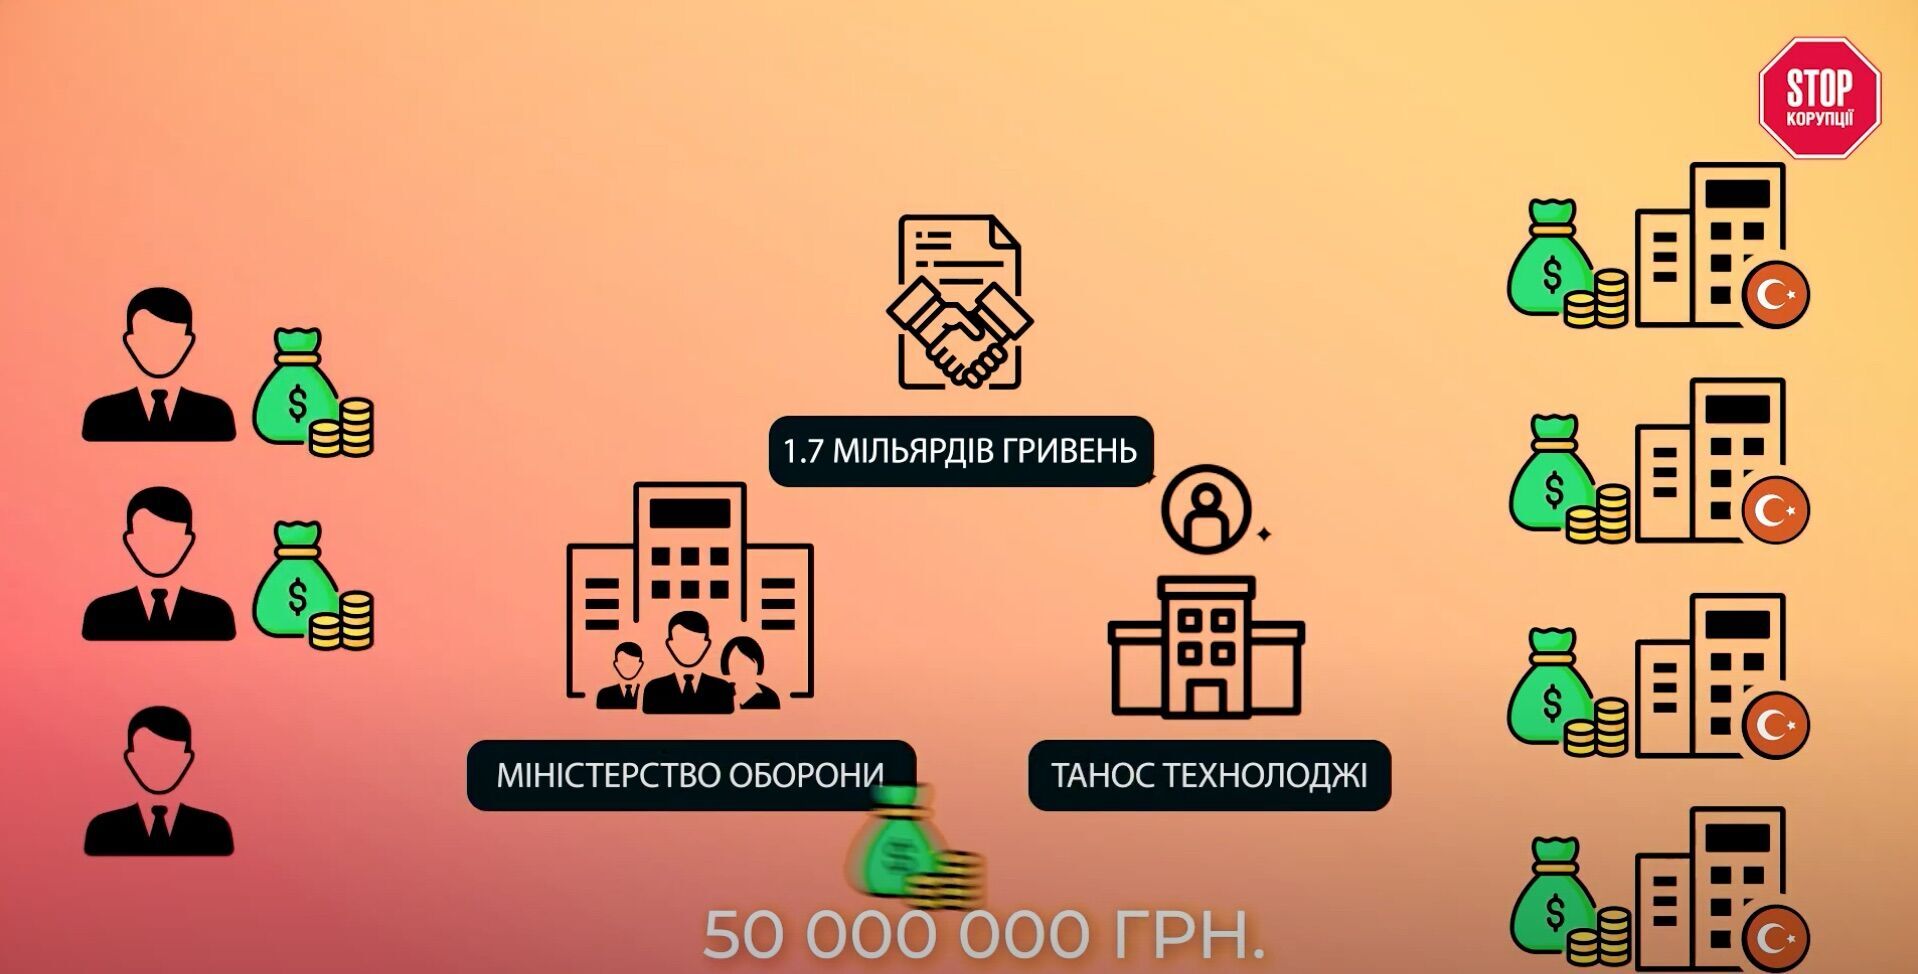 Схема виведення 1,7 млрд грн від Міноборони через ''Танос Технолоджи''